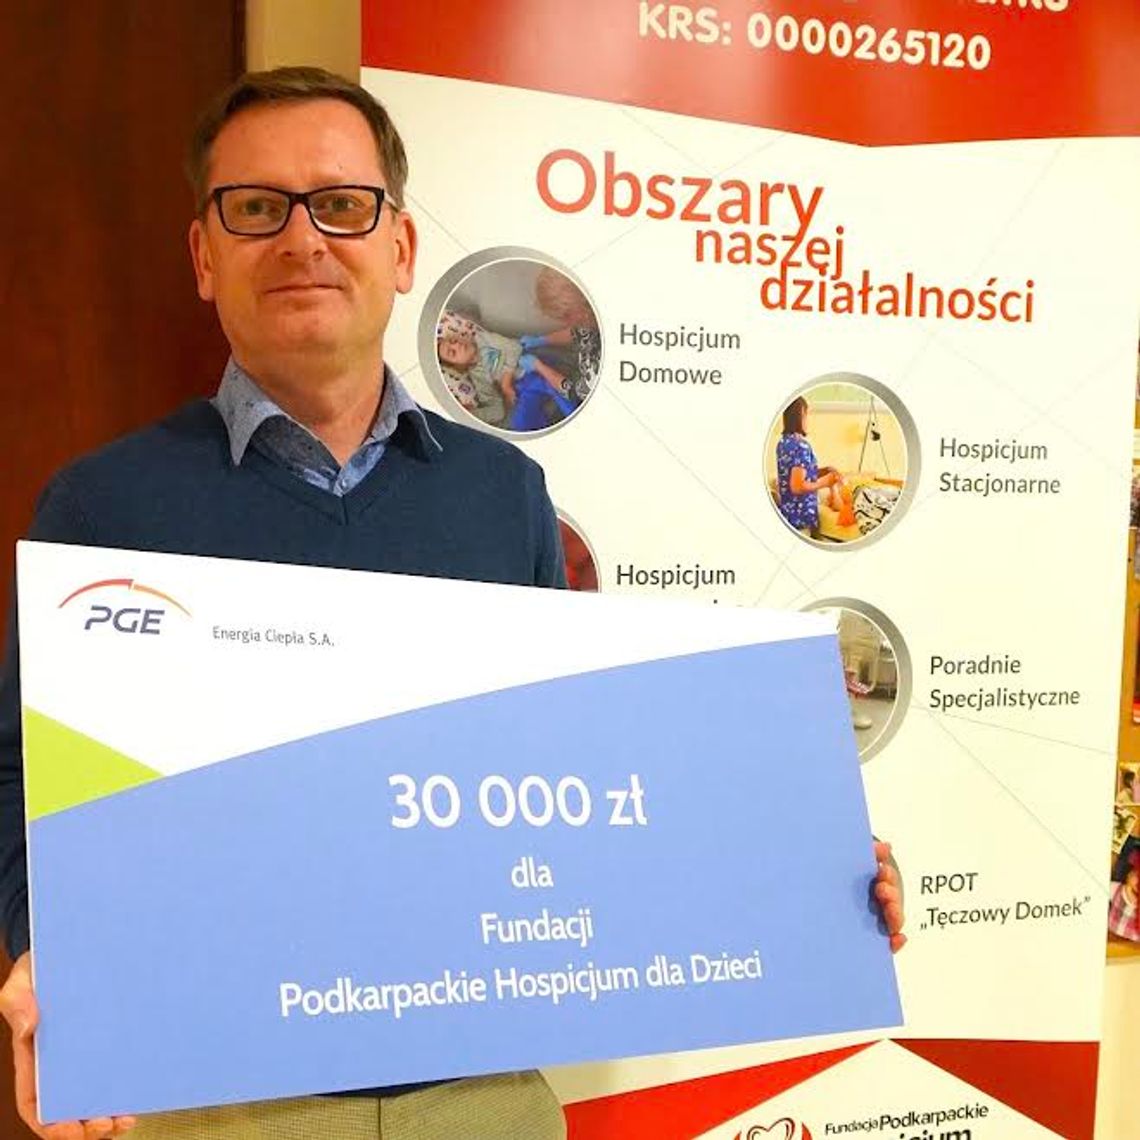 30 000 zł dla Podkarpackiego Hospicjum dla Dzieci w ramach programu PGE „Dzielimy się ciepłem”